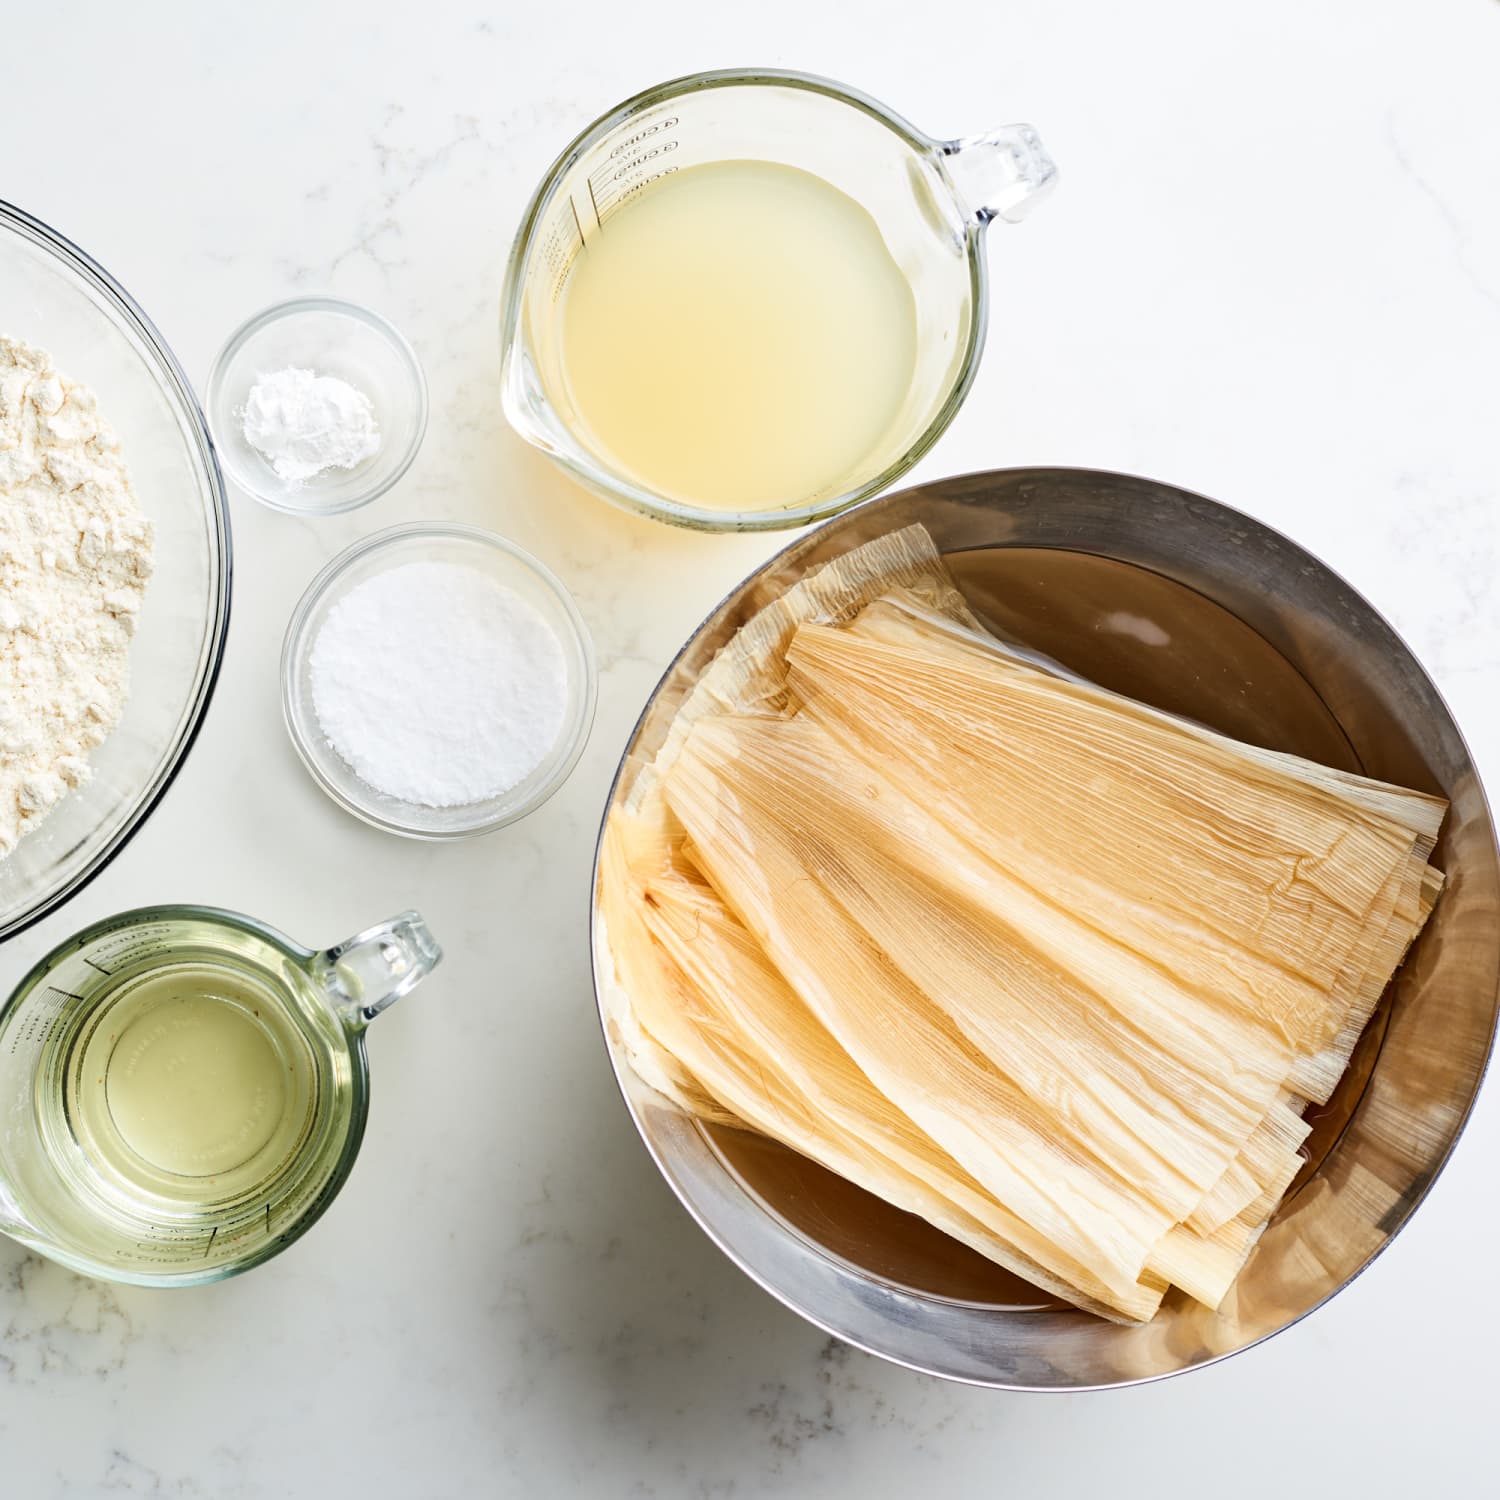 Making Tamales - My Food Storage Cookbook